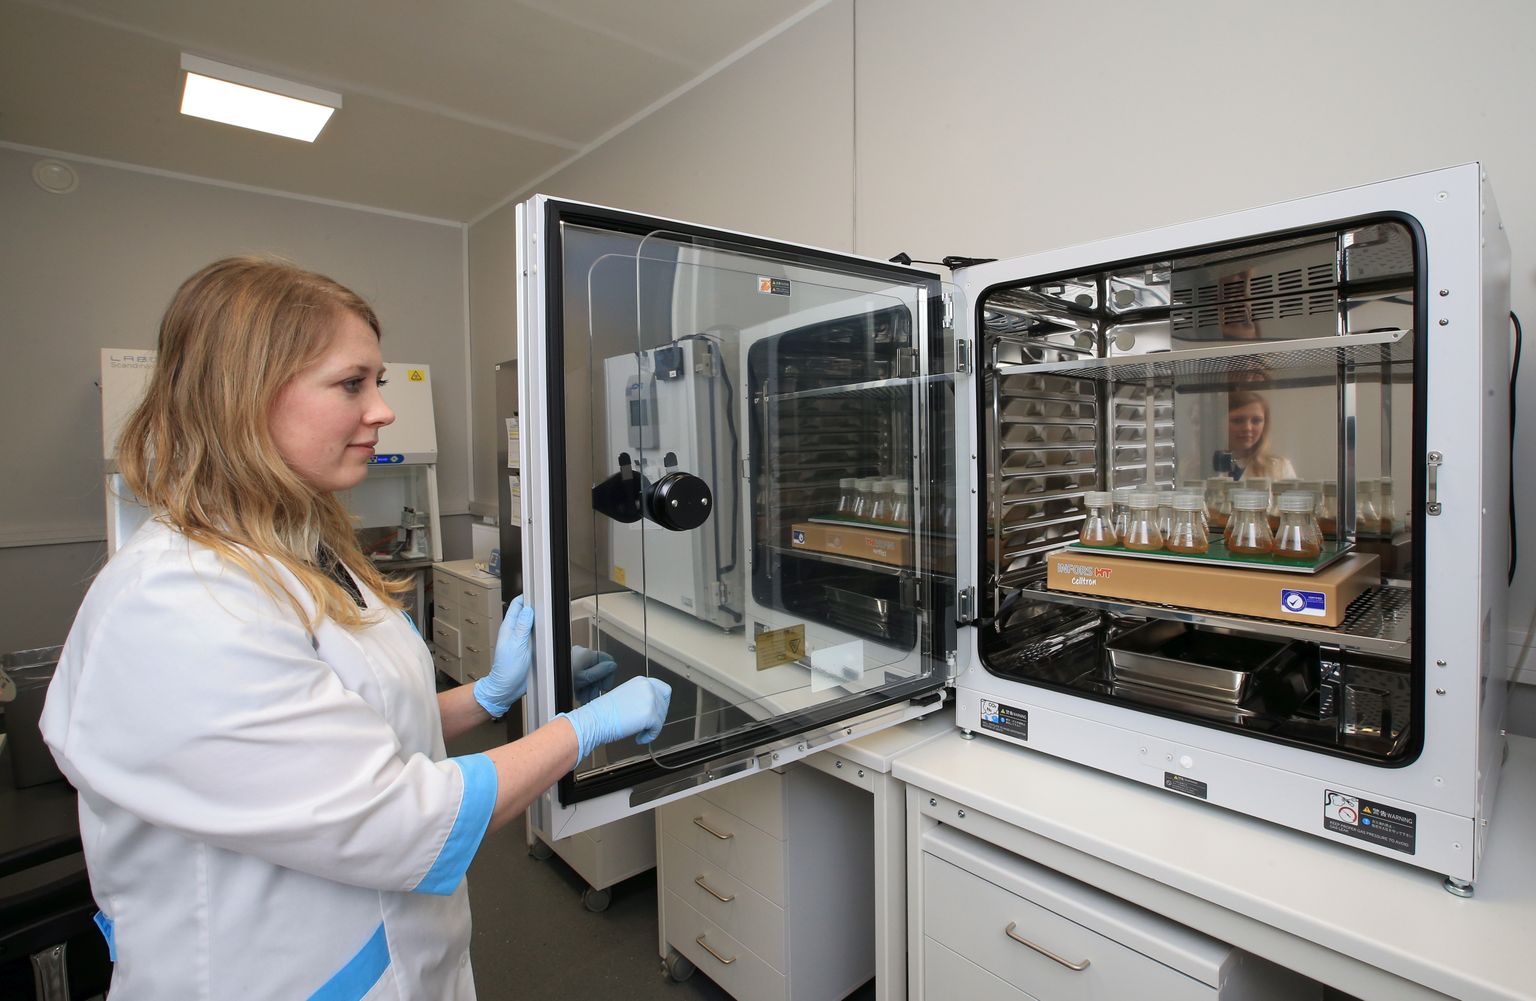 Teadustöö Icosagn ASi laboris.
Pildil Icosagen AS rakuliiniarenduse labori juhataja Eva-Maria Tombak inkubaatori juures, kus kasvatatakse rakke. Pilt on illustreeriv.